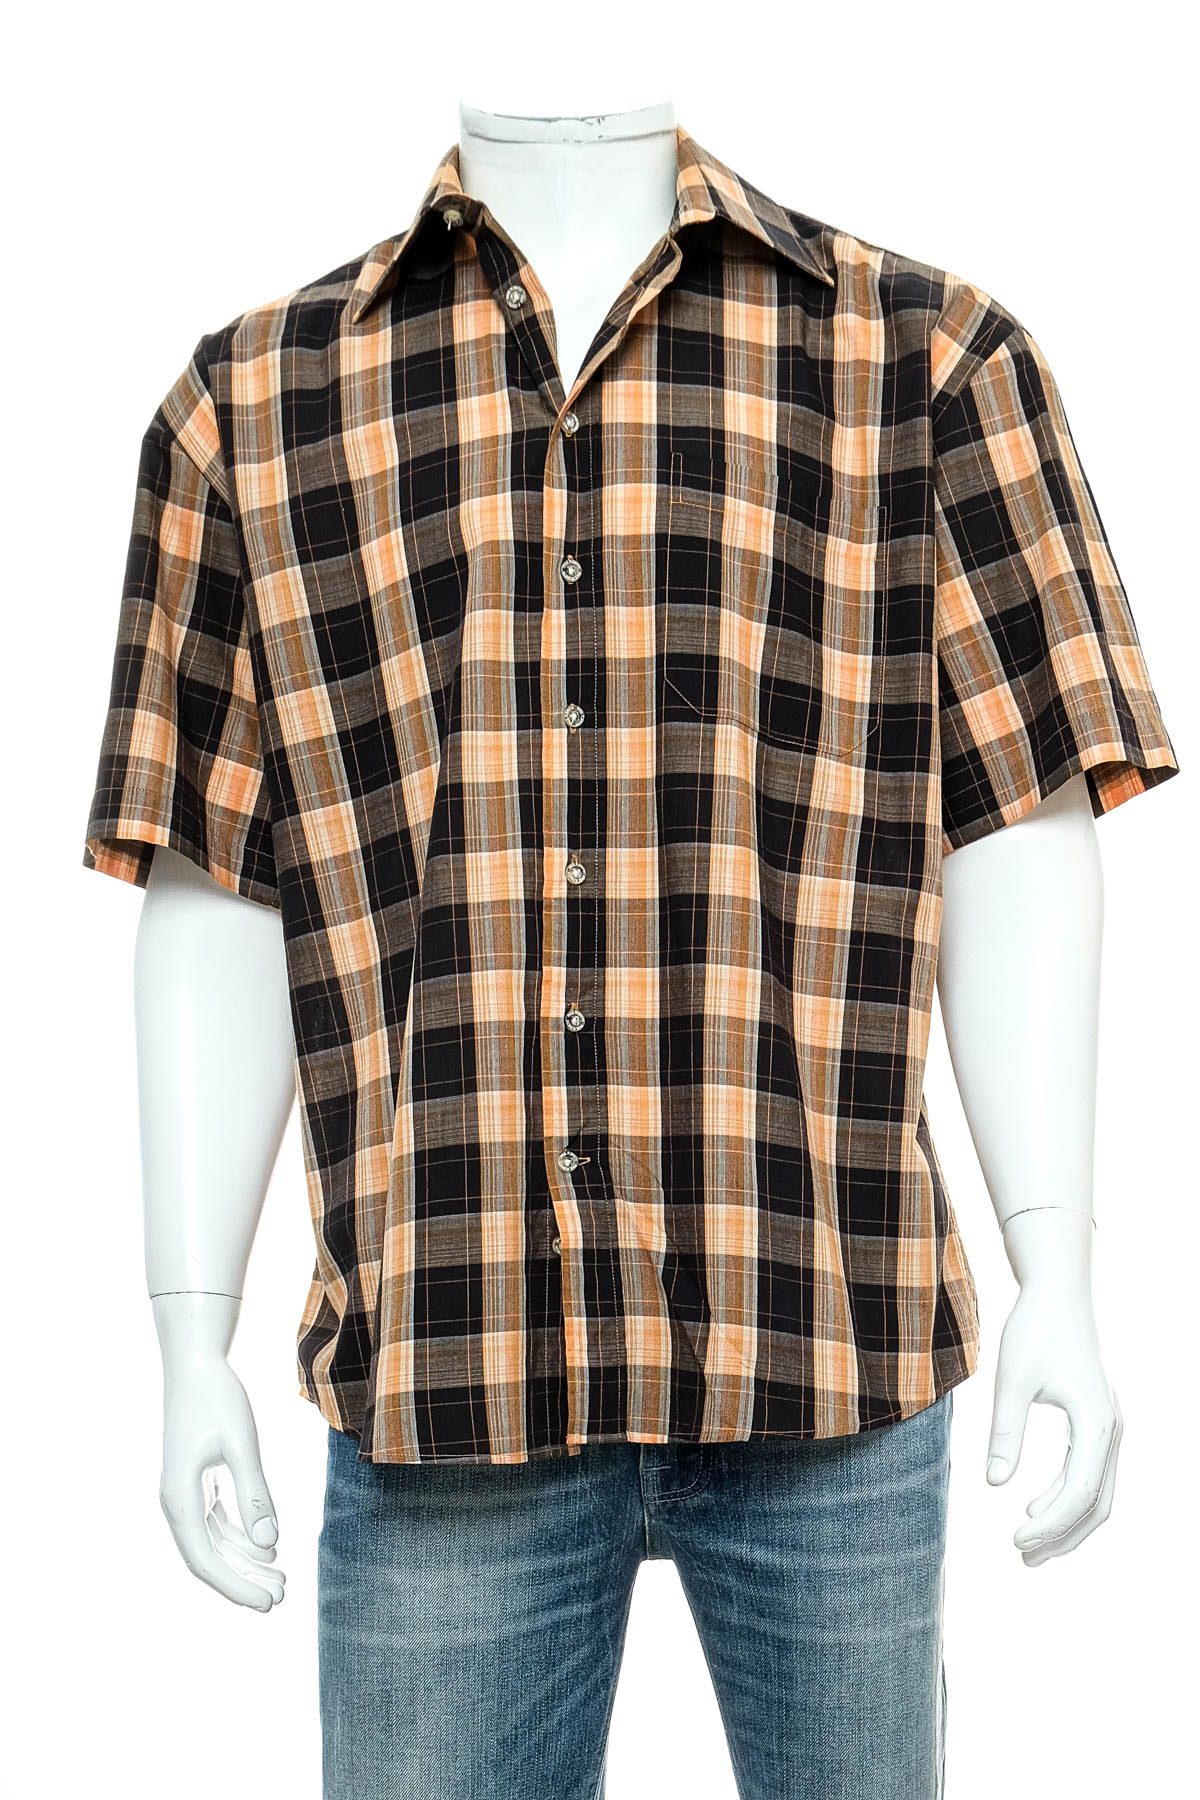 Ανδρικό πουκάμισο - Paul Smith - 0